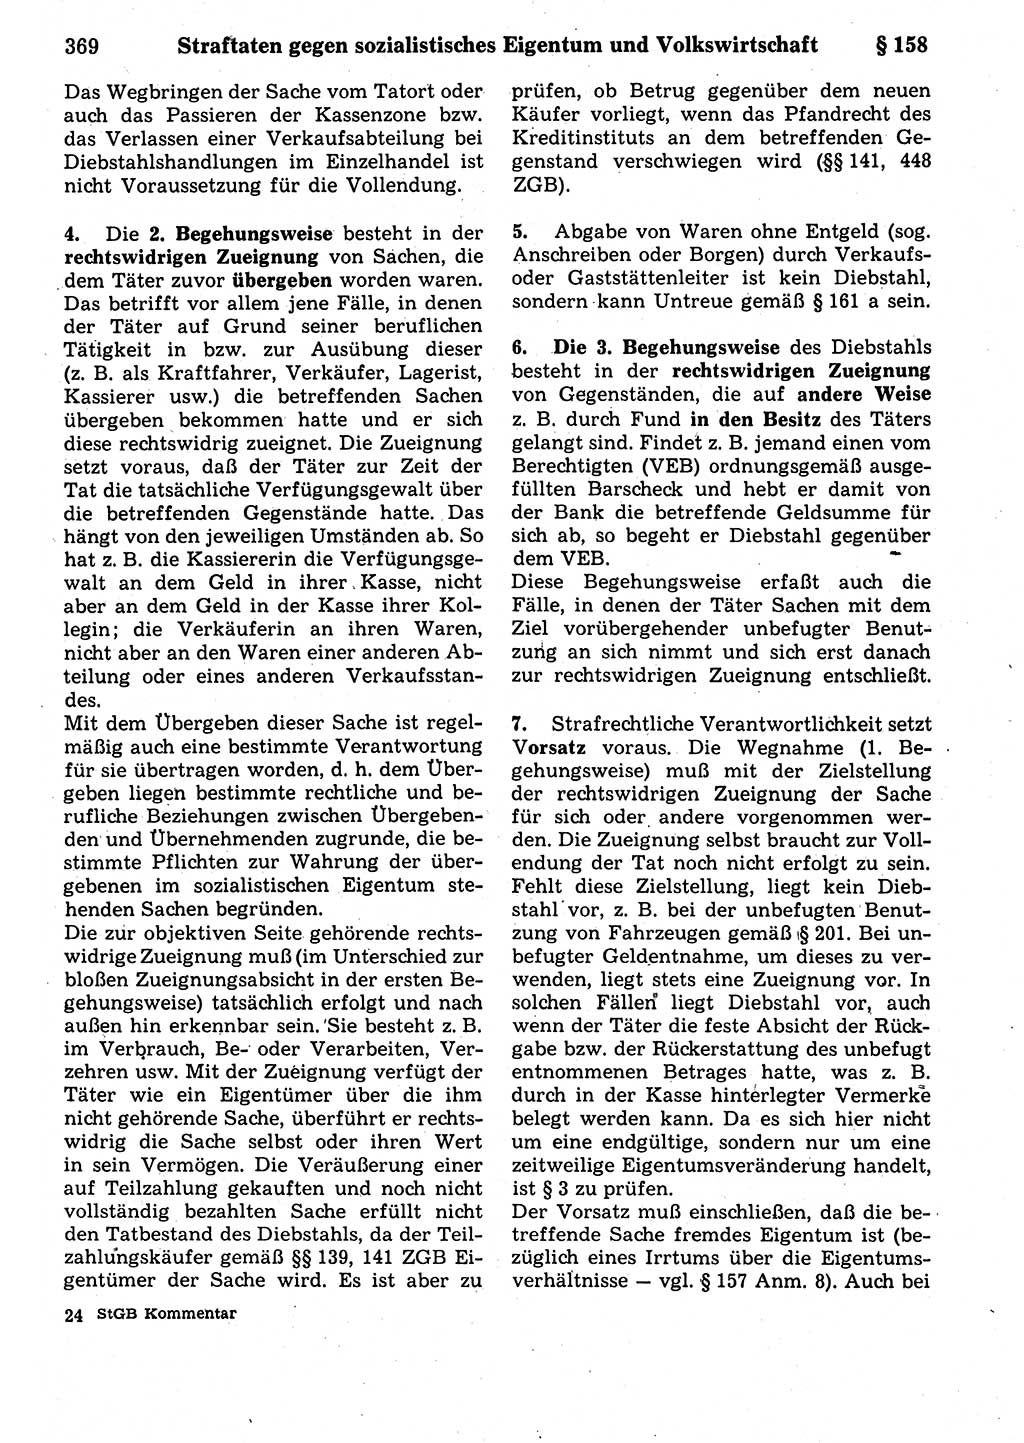 Strafrecht der Deutschen Demokratischen Republik (DDR), Kommentar zum Strafgesetzbuch (StGB) 1987, Seite 369 (Strafr. DDR Komm. StGB 1987, S. 369)